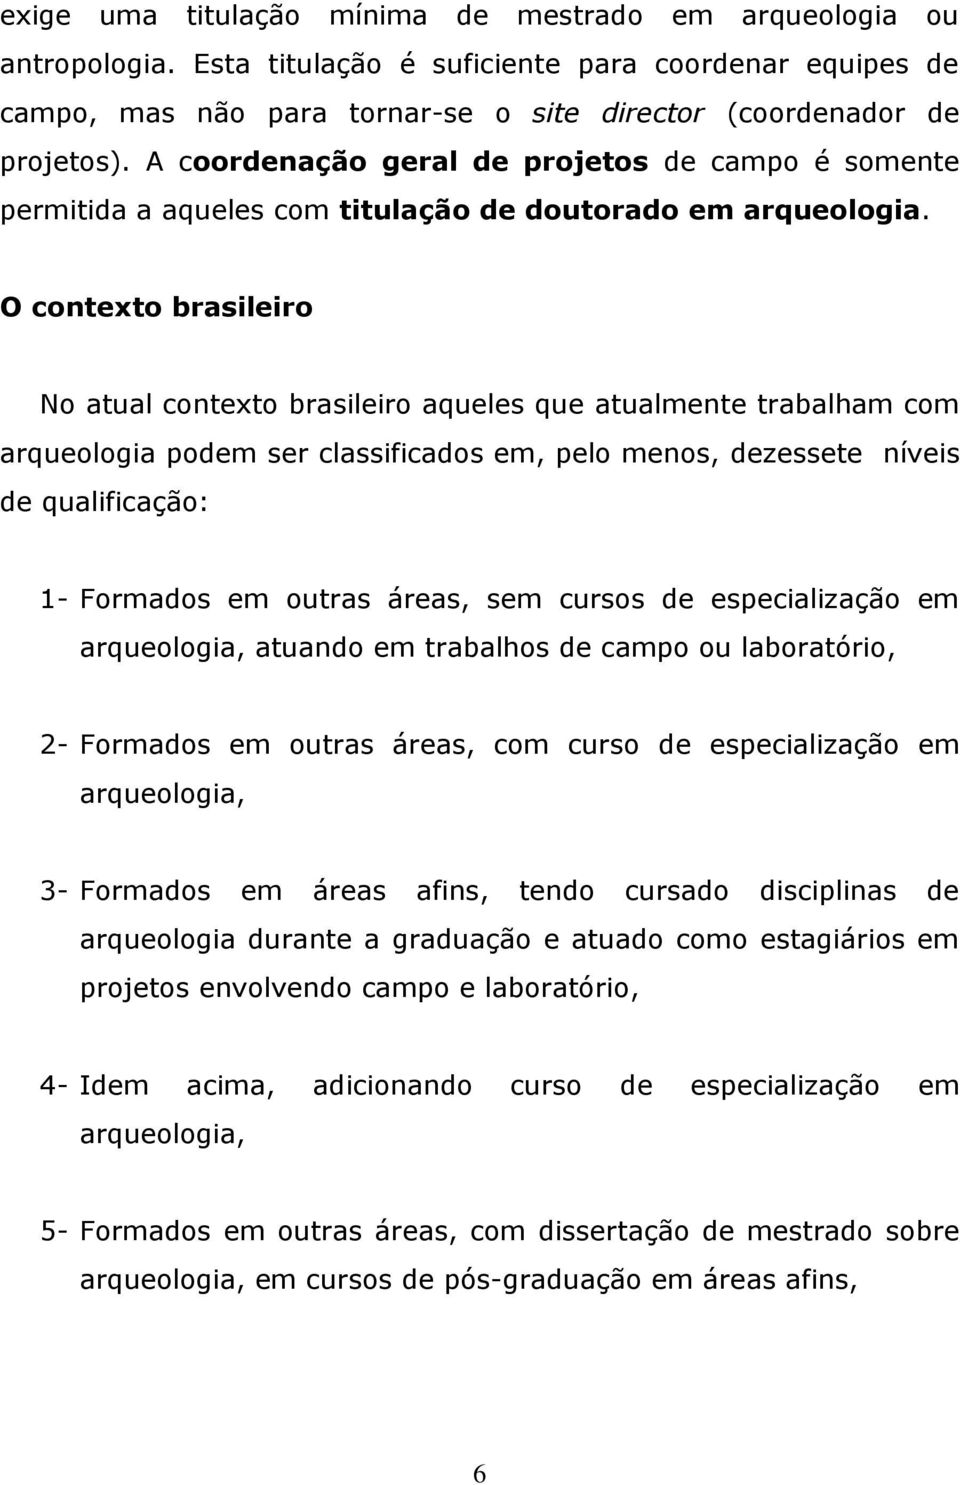 O contexto brasileiro No atual contexto brasileiro aqueles que atualmente trabalham com arqueologia podem ser classificados em, pelo menos, dezessete níveis de qualificação: 1- Formados em outras